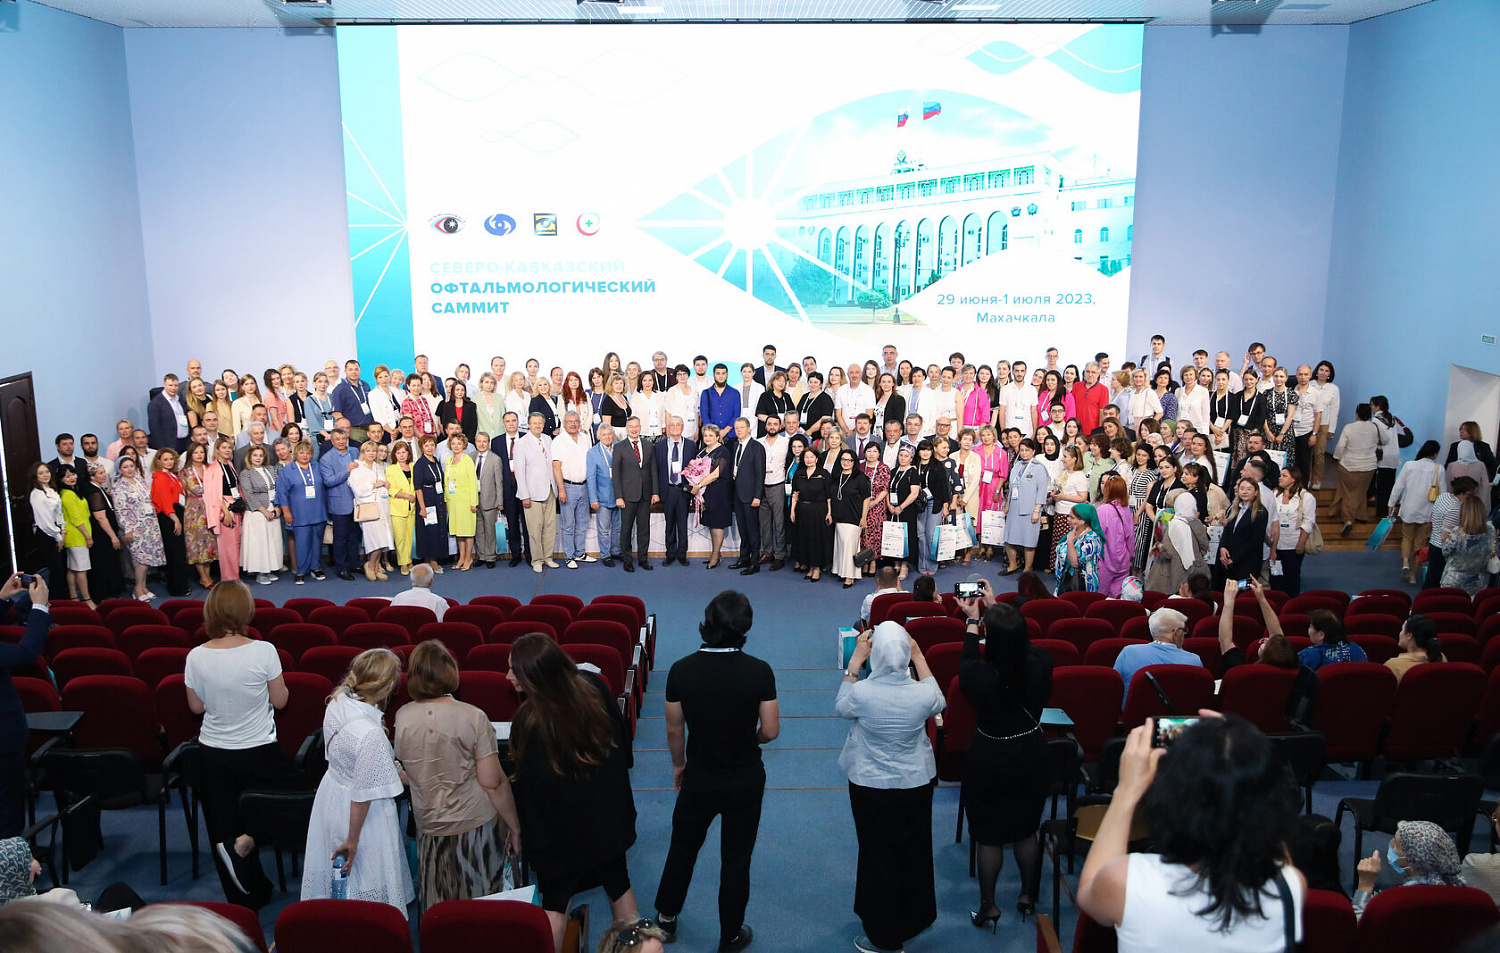 Северо-Кавказский офтальмологический саммит 2023